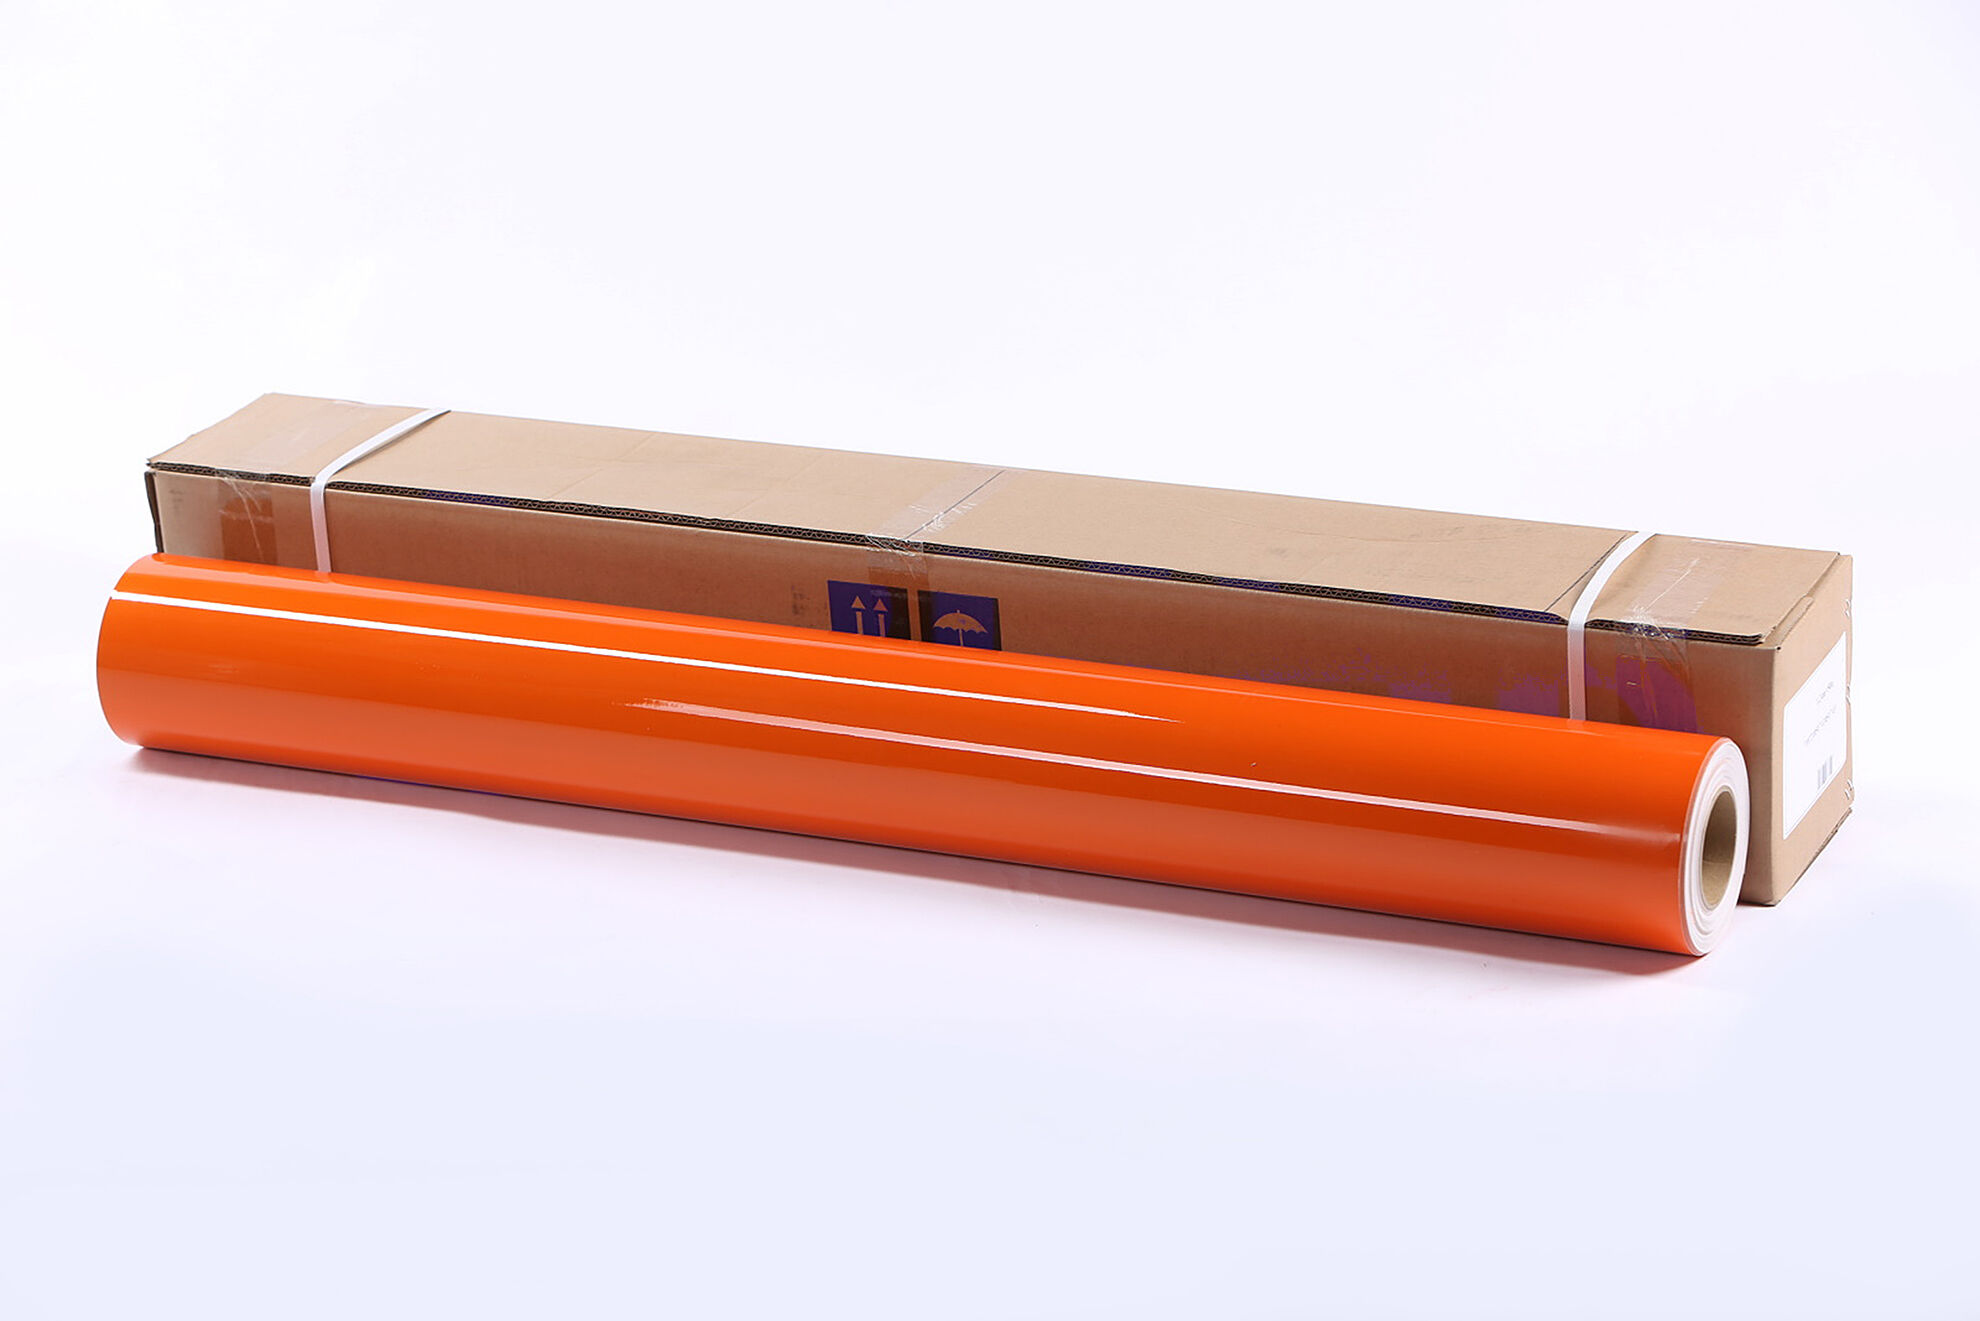 Световозвращающая пленка Lucentis LCR-5000 печатная оранжевая, тип А, класс I 1,22*45,7 м (с маркировкой)